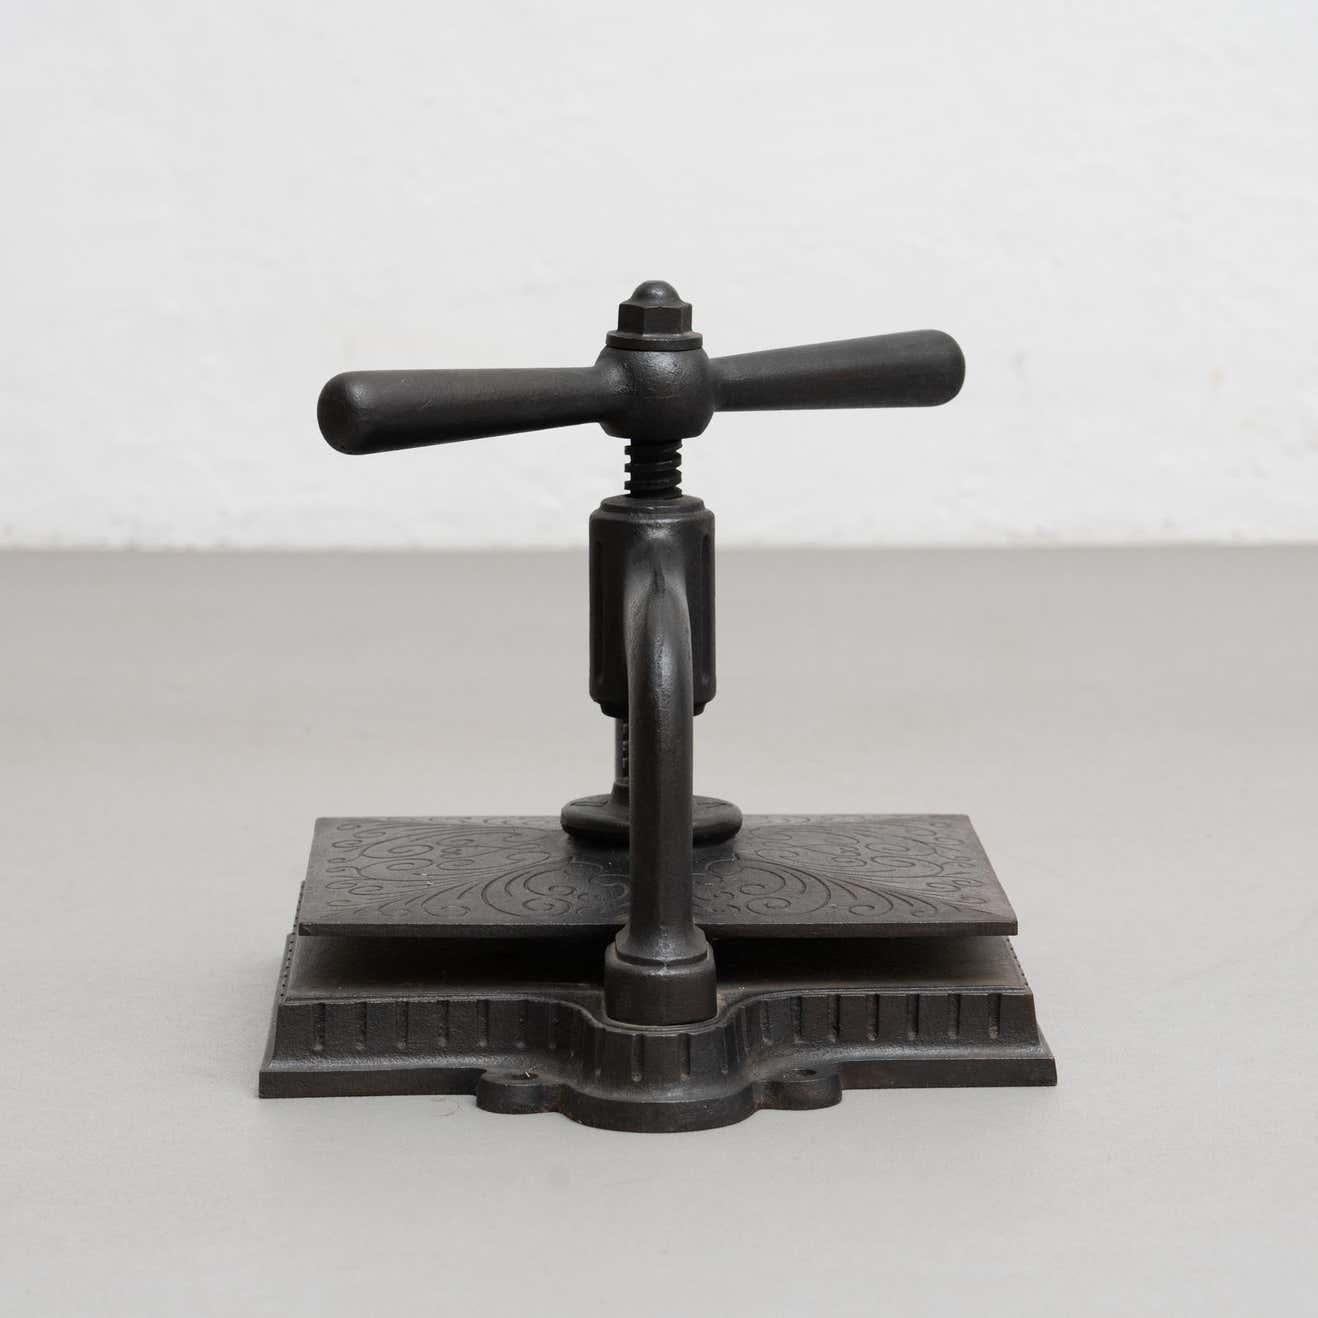 Outil rustique de presse à papier rotative en métal.

Fabricant inconnu, France, vers 1930.

En état d'origine, avec une usure mineure conforme à l'âge et à l'utilisation, préservant une belle patine.

Matériaux :
Métal.

